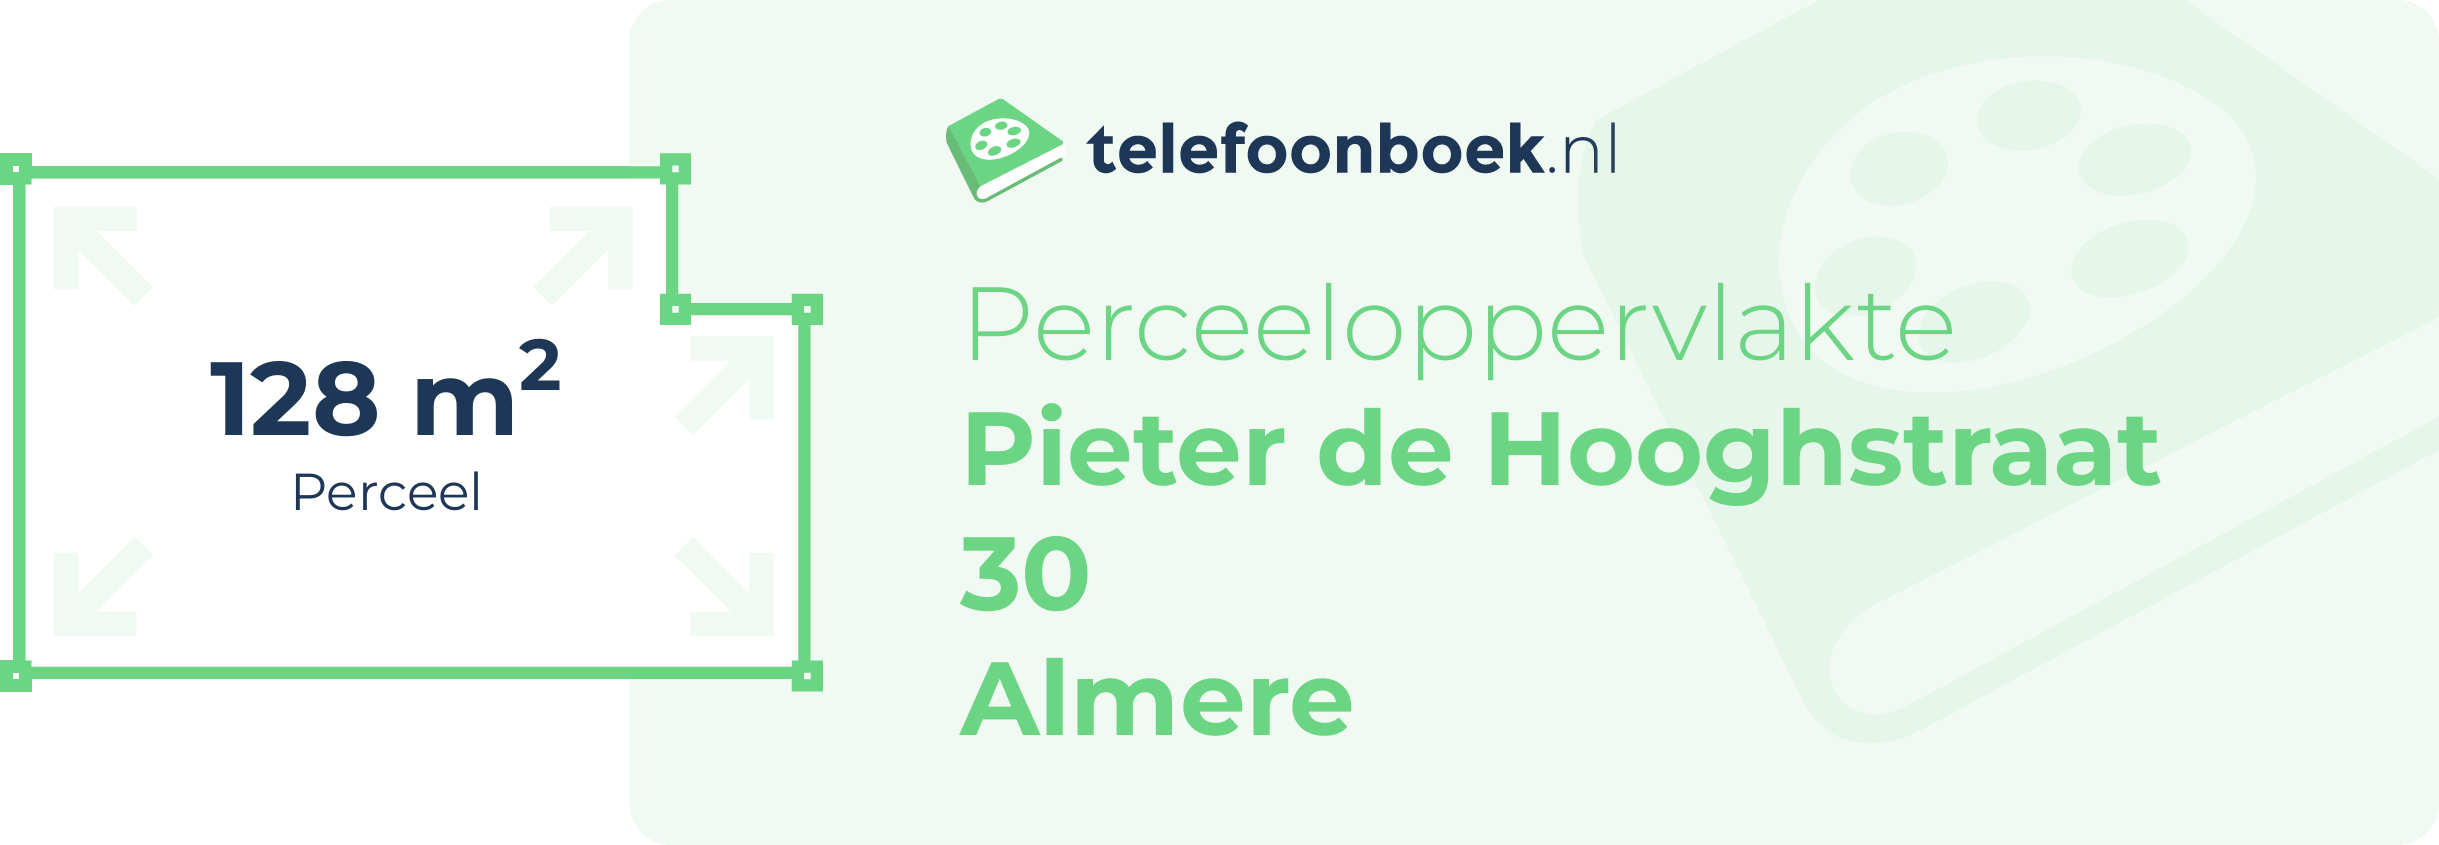 Perceeloppervlakte Pieter De Hooghstraat 30 Almere